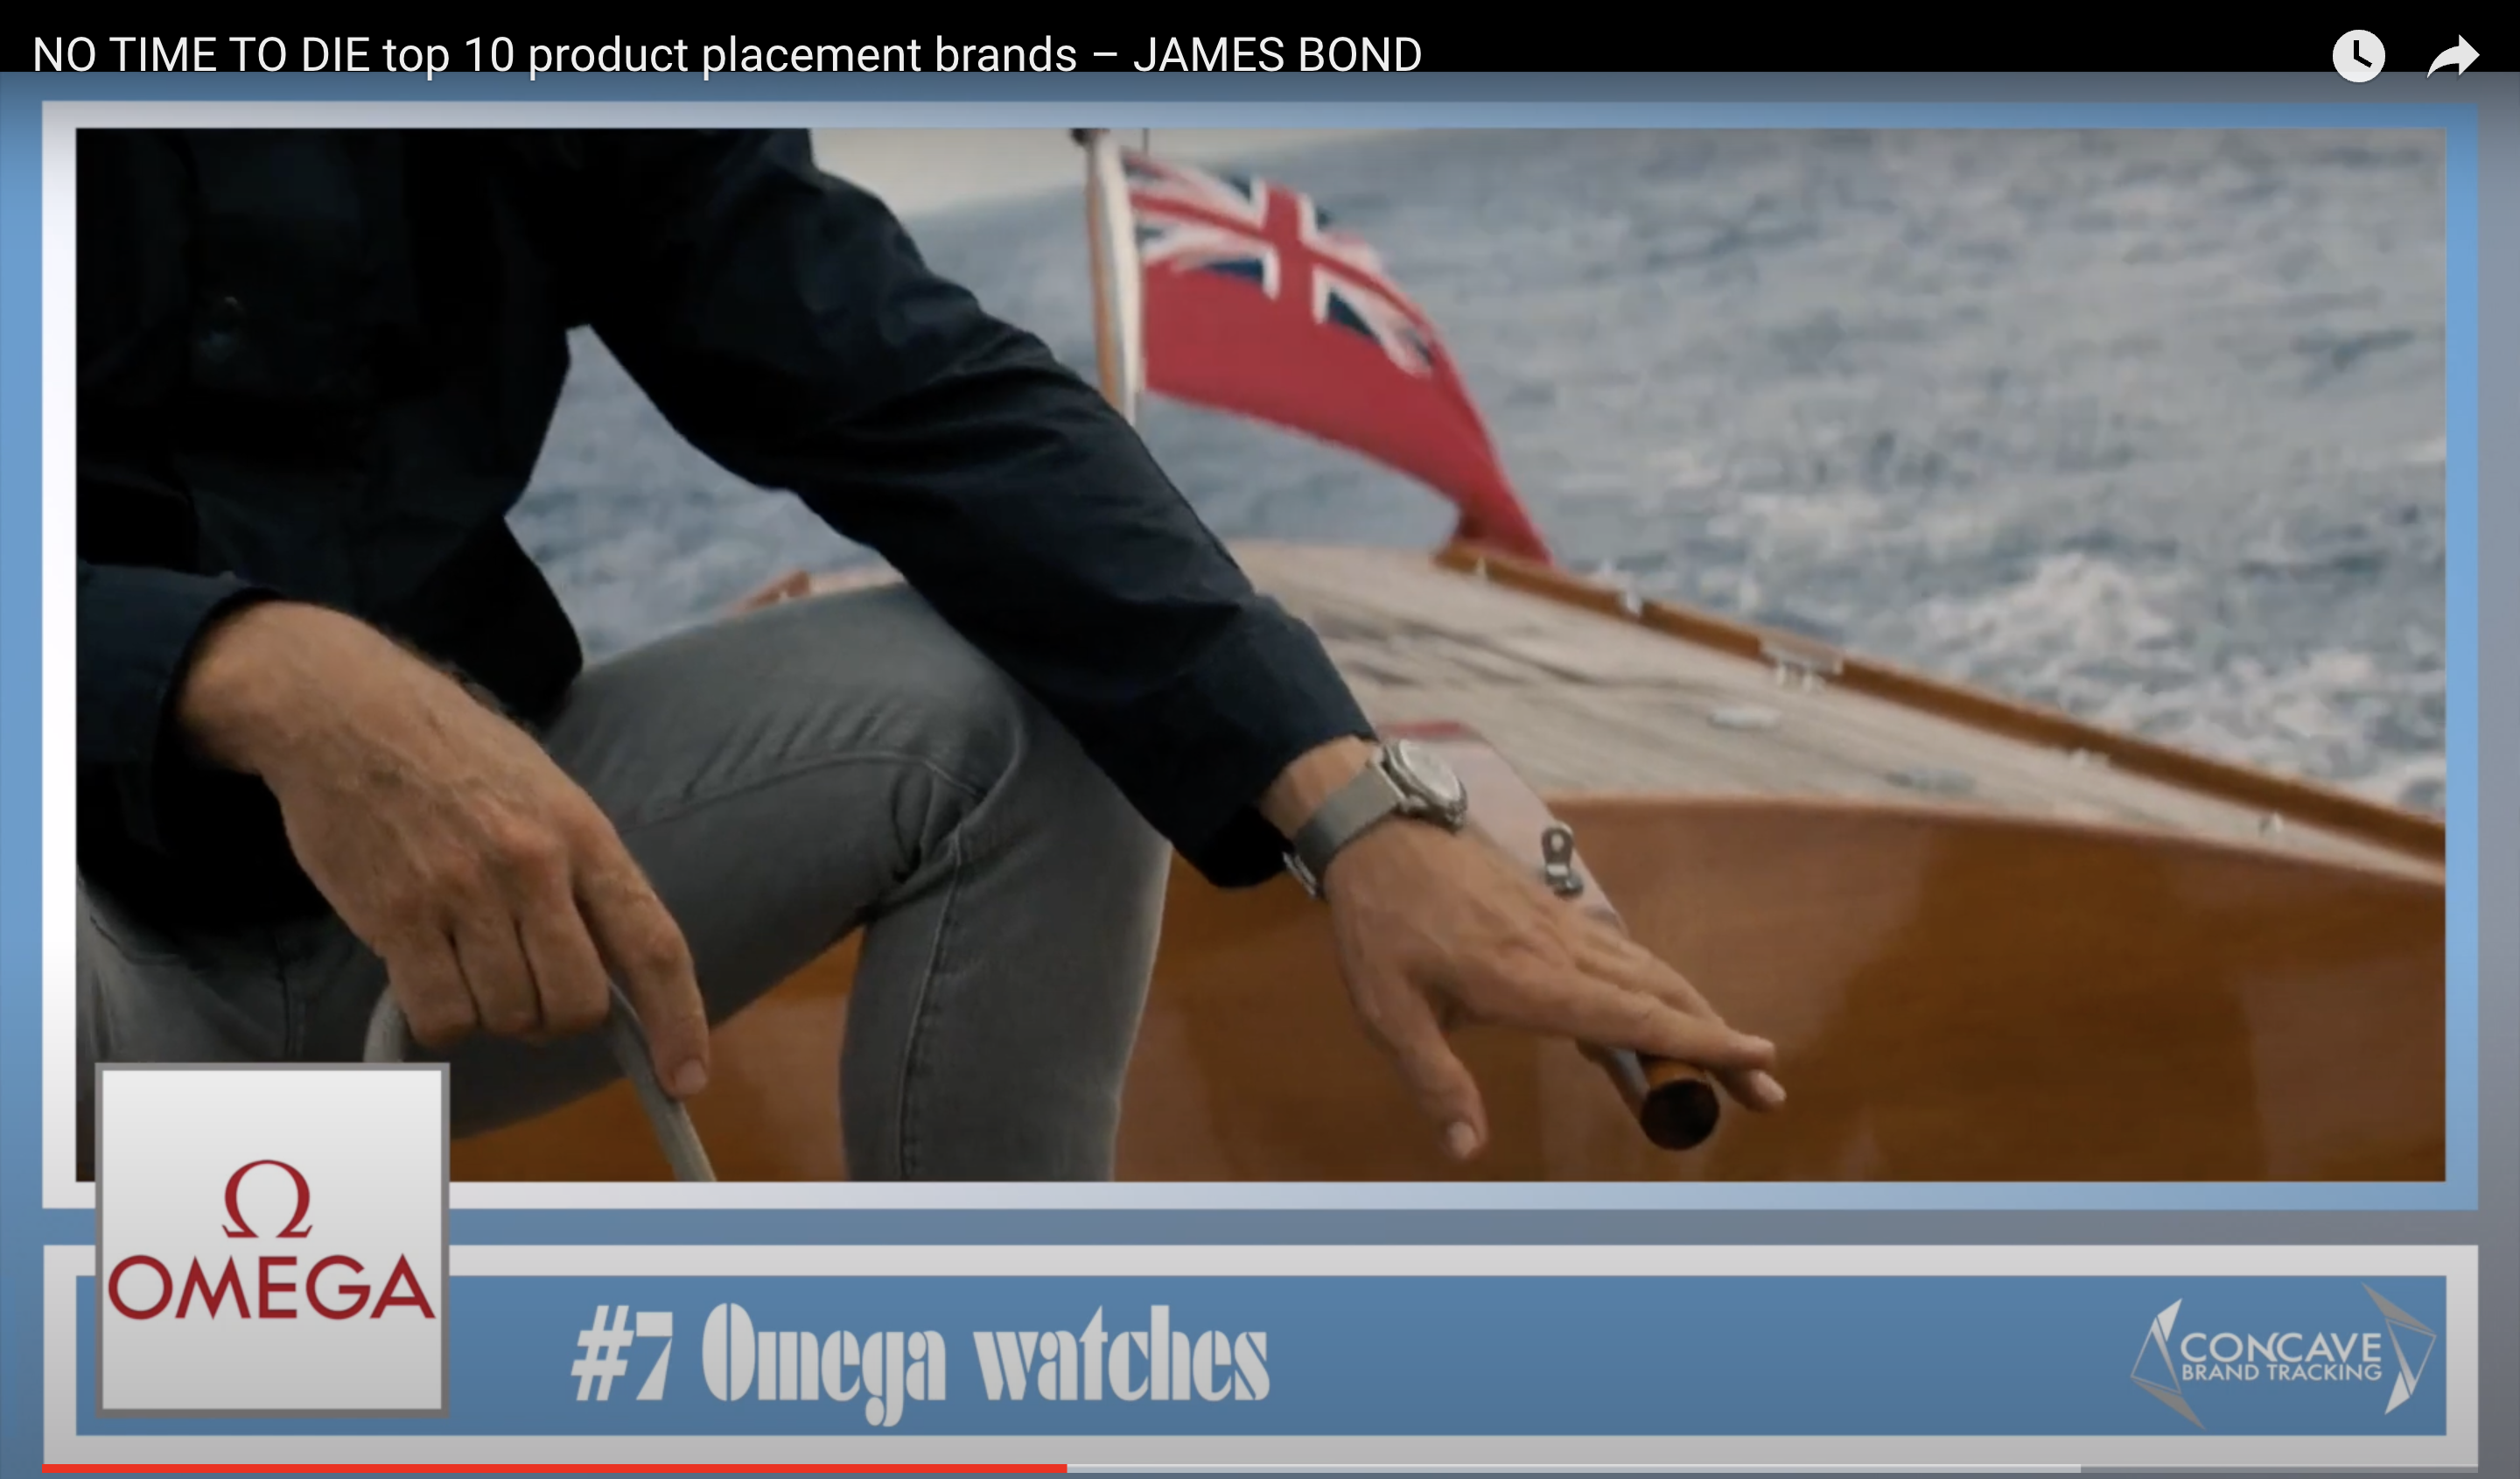 exemples de placement de produits dans James Bond